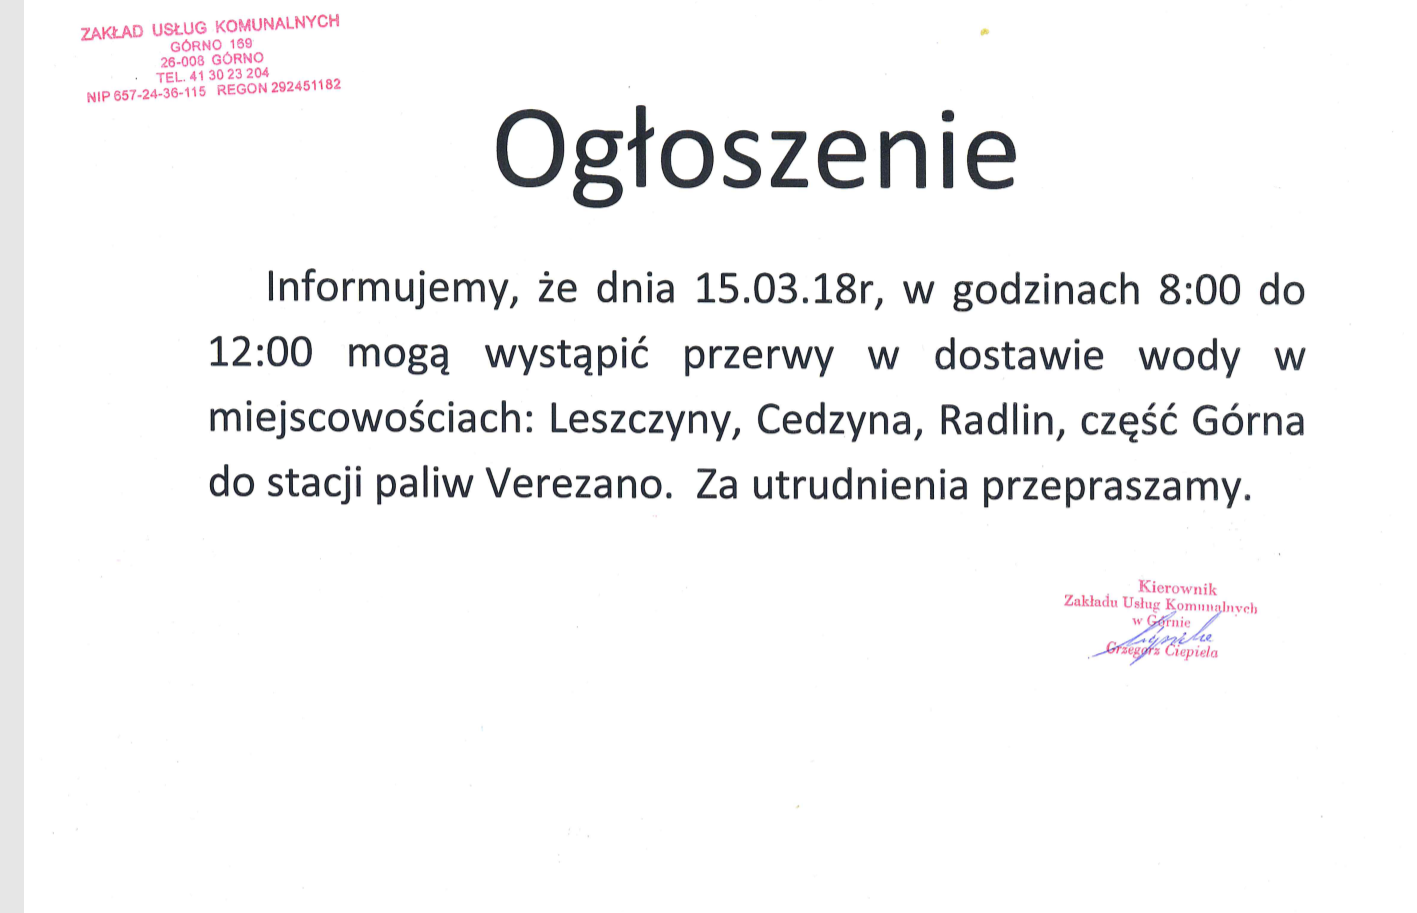 Ogłoszenie – przerwa w dostawie wody dnia 15.03.18r w miejscowościach: Leszczyny, Cedzyna, Radlin, część Górna.